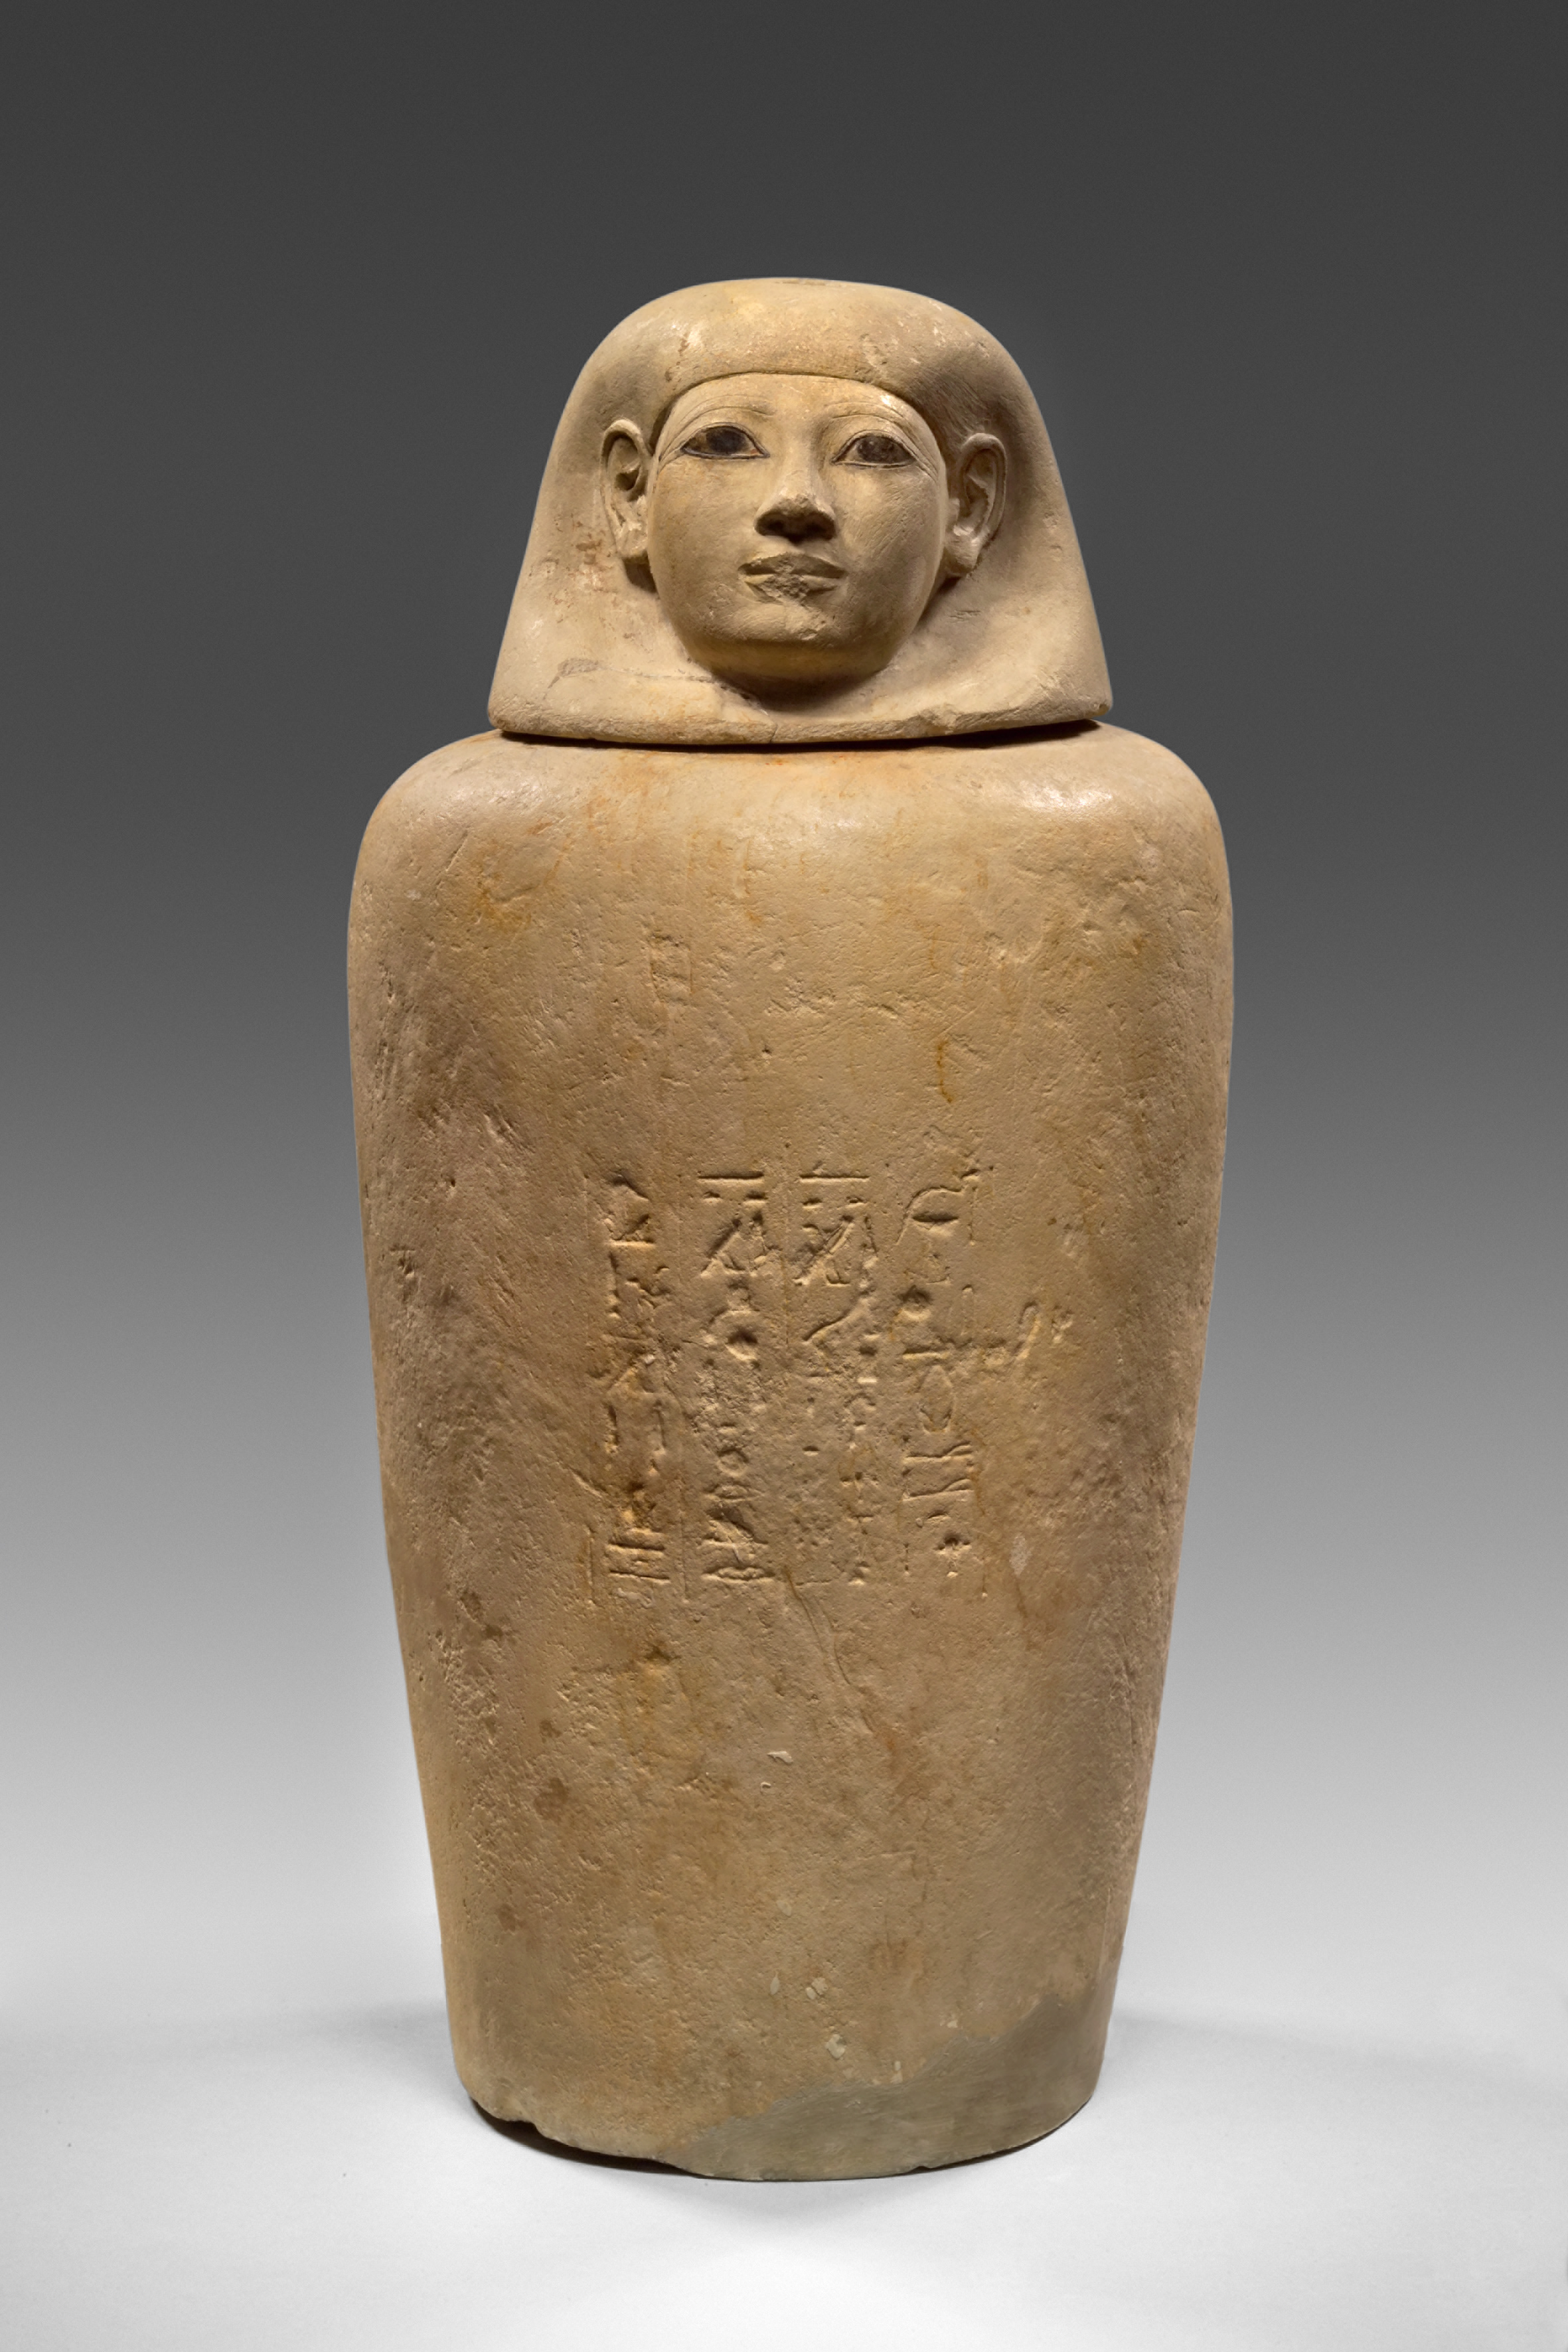 Tarro canopo de piedra caliza de la dama egipcia Senetnay (c.1450 a.C.); Museo August Kestner, Hannover.